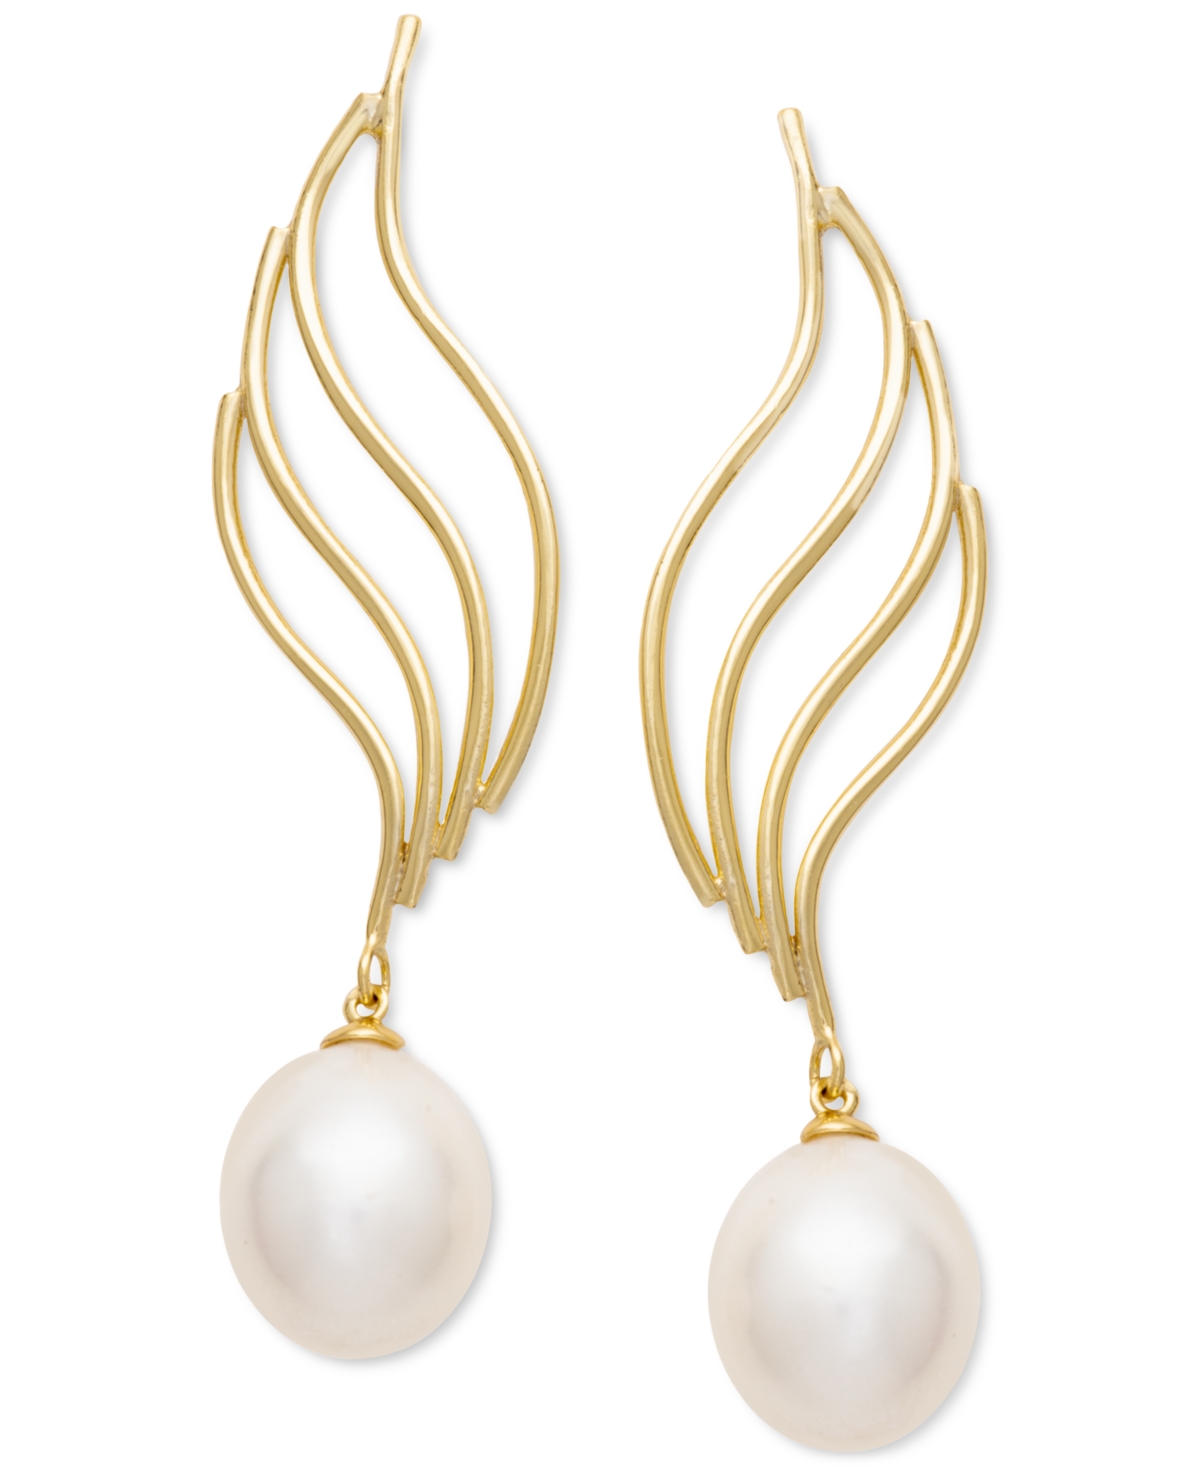 Cultured Freshwater Pearl (9x11mm) Fancy Swirl Drop Earrings in 18k Gold-Plated Sterling Silver - White